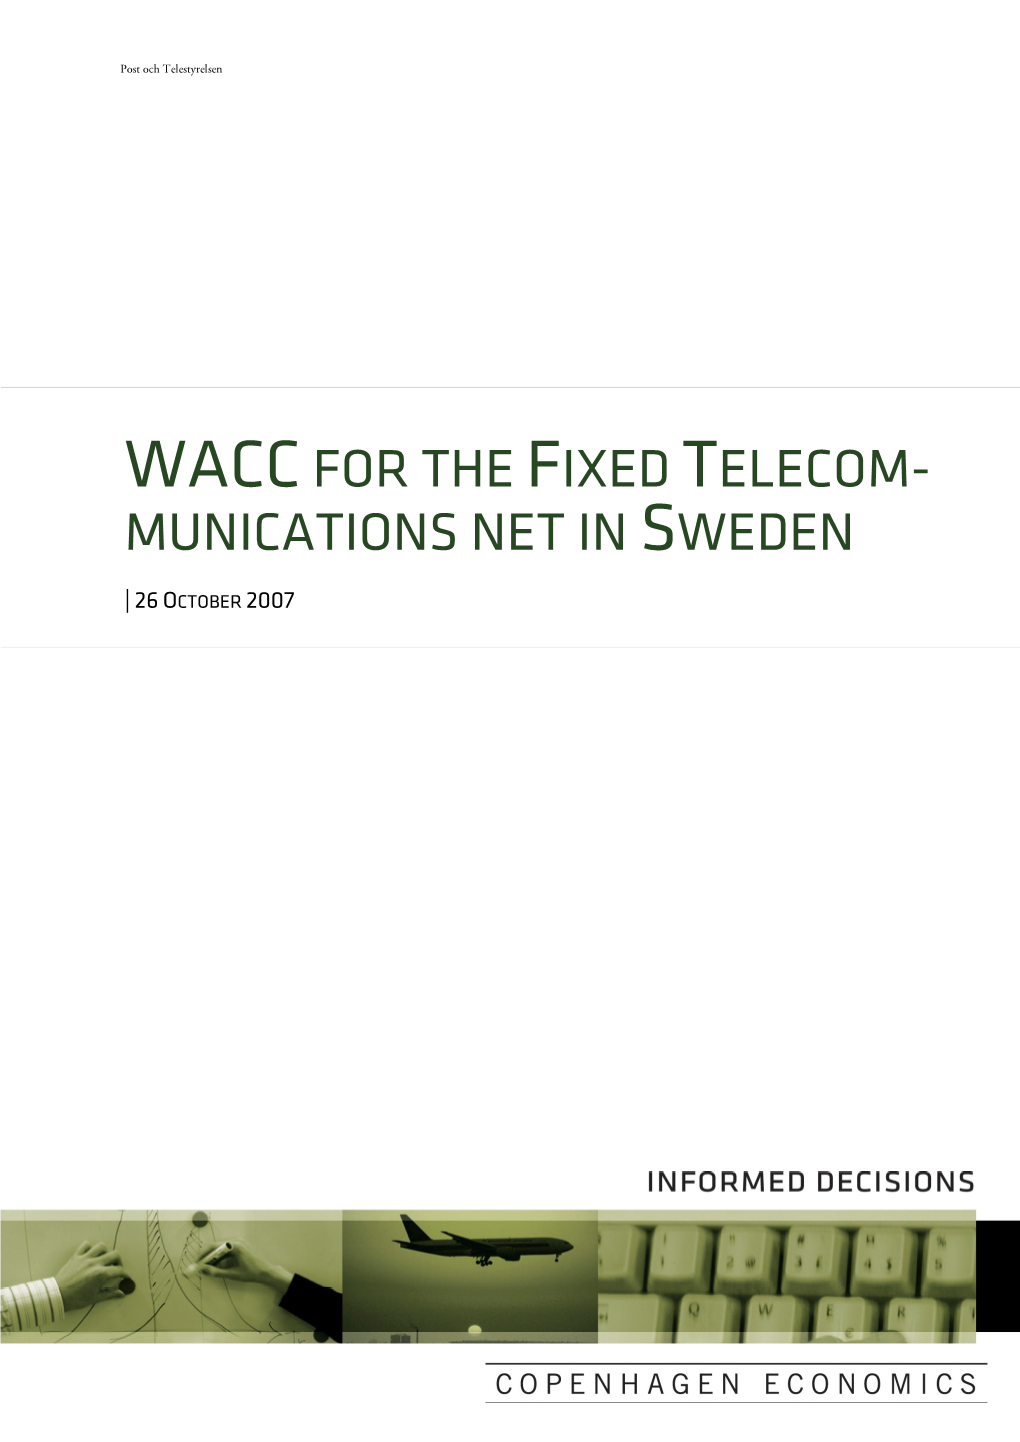 Wacc for Teliasoneras Fixed Net Business in Sweden